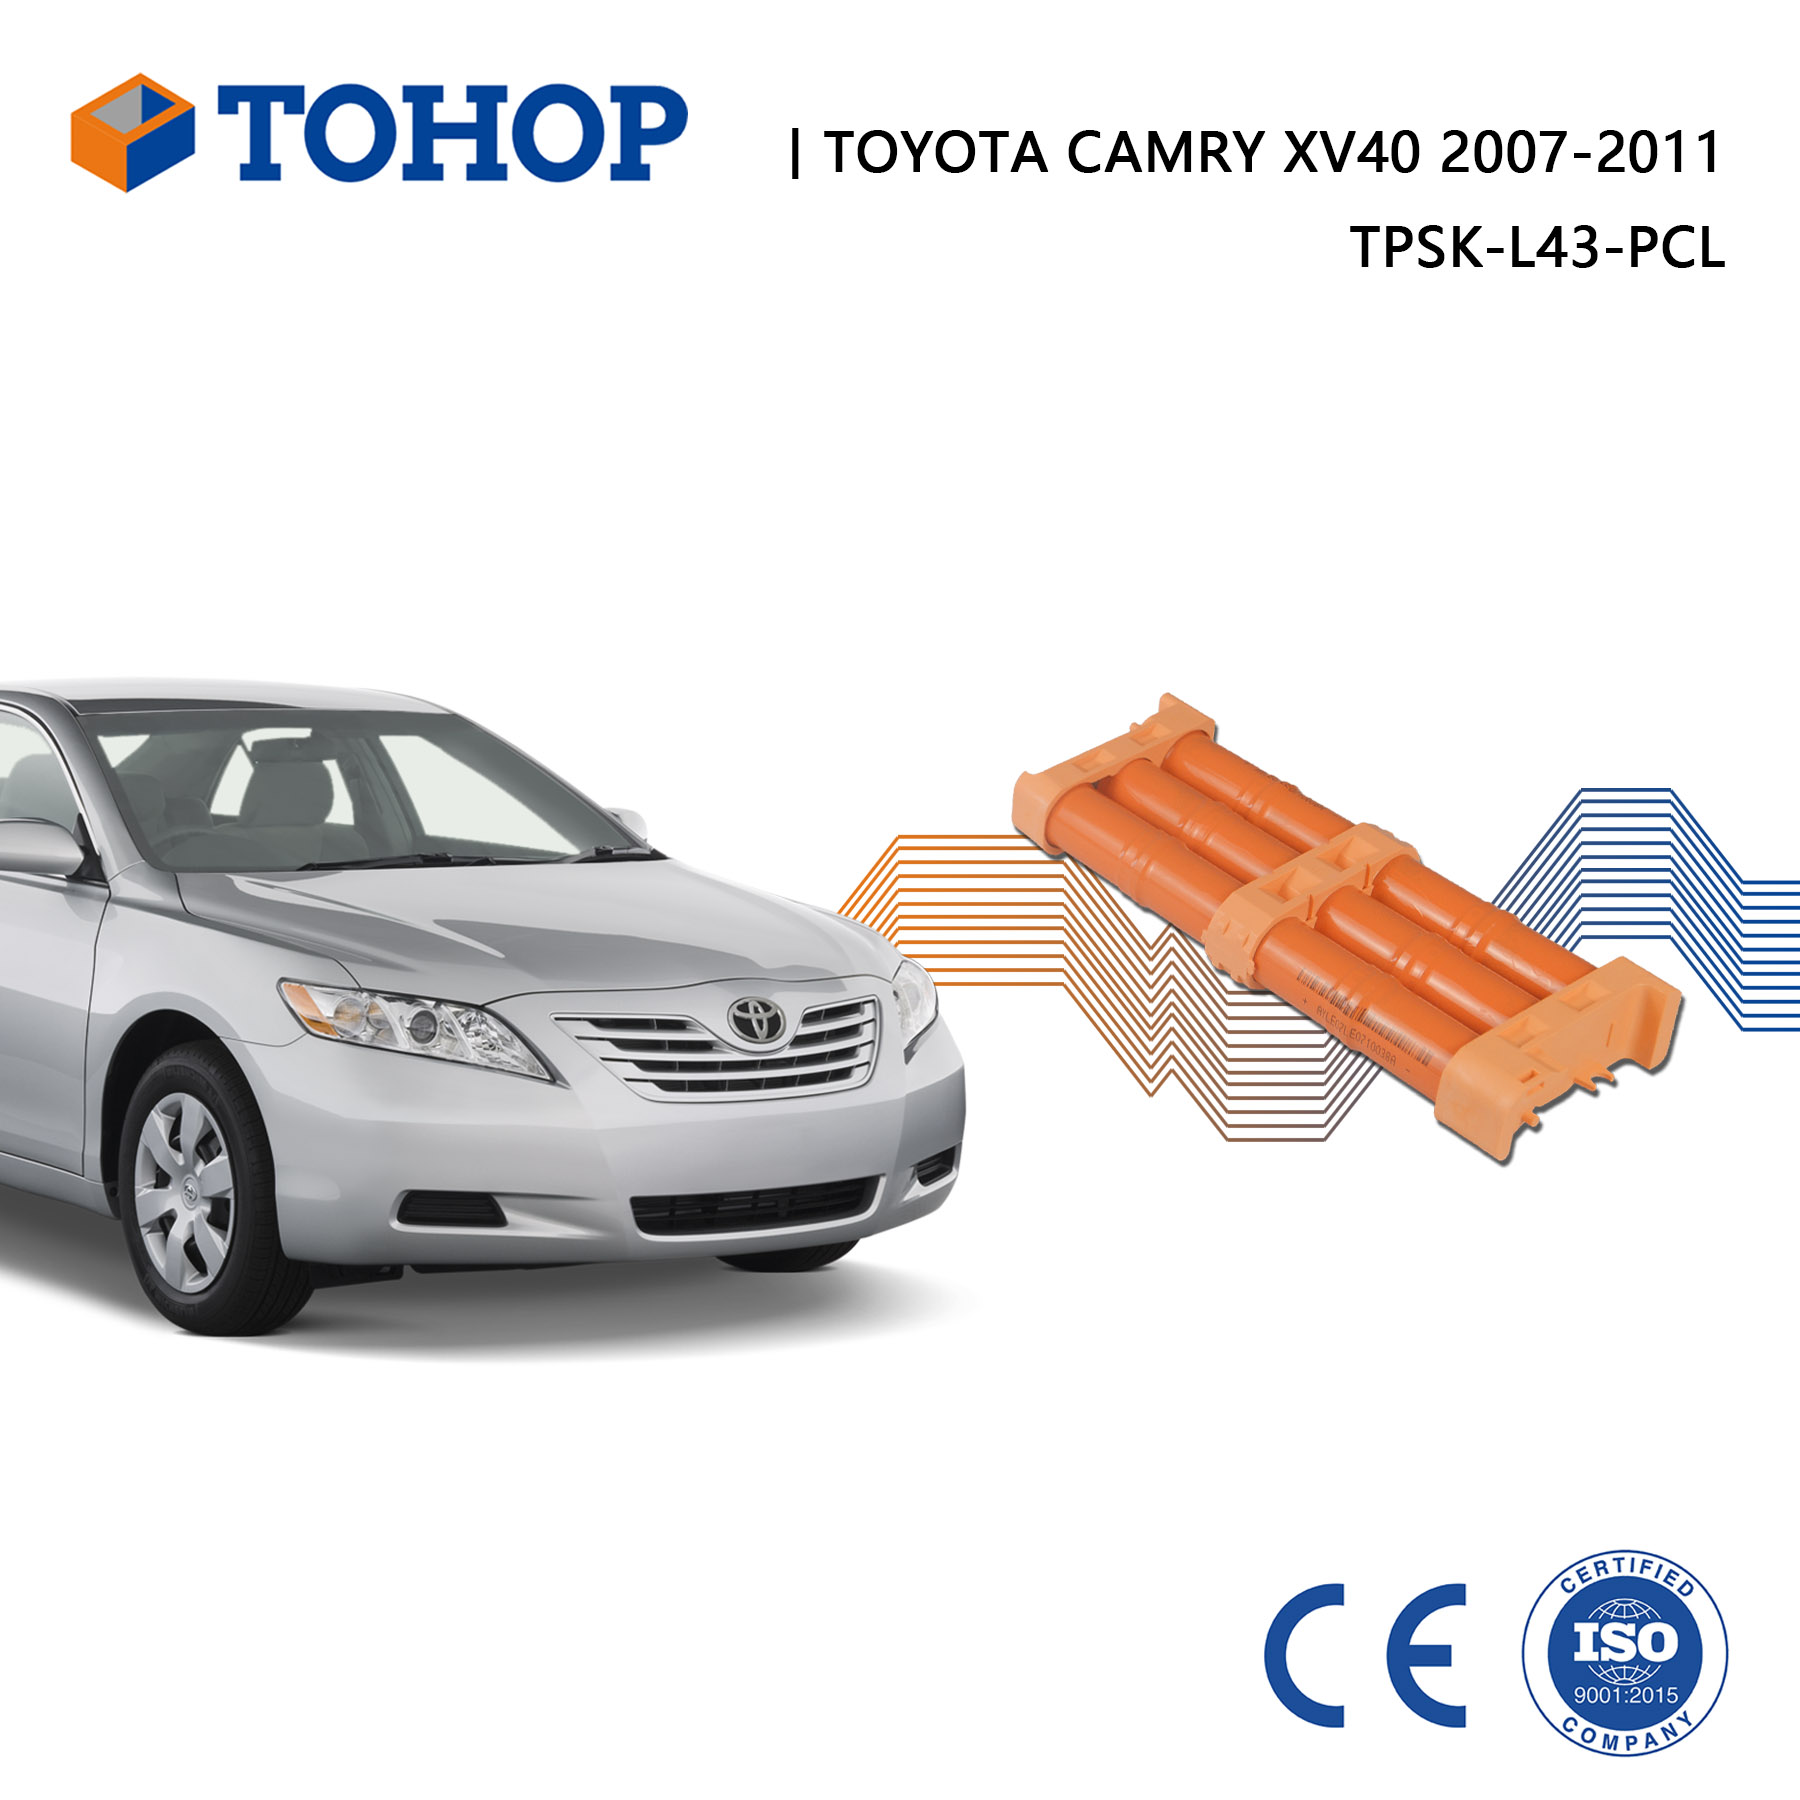 Paquete de batería híbrida para vehículo Toyota Camry XV40 2011 NI-Mh 14.4V/6.5Ah